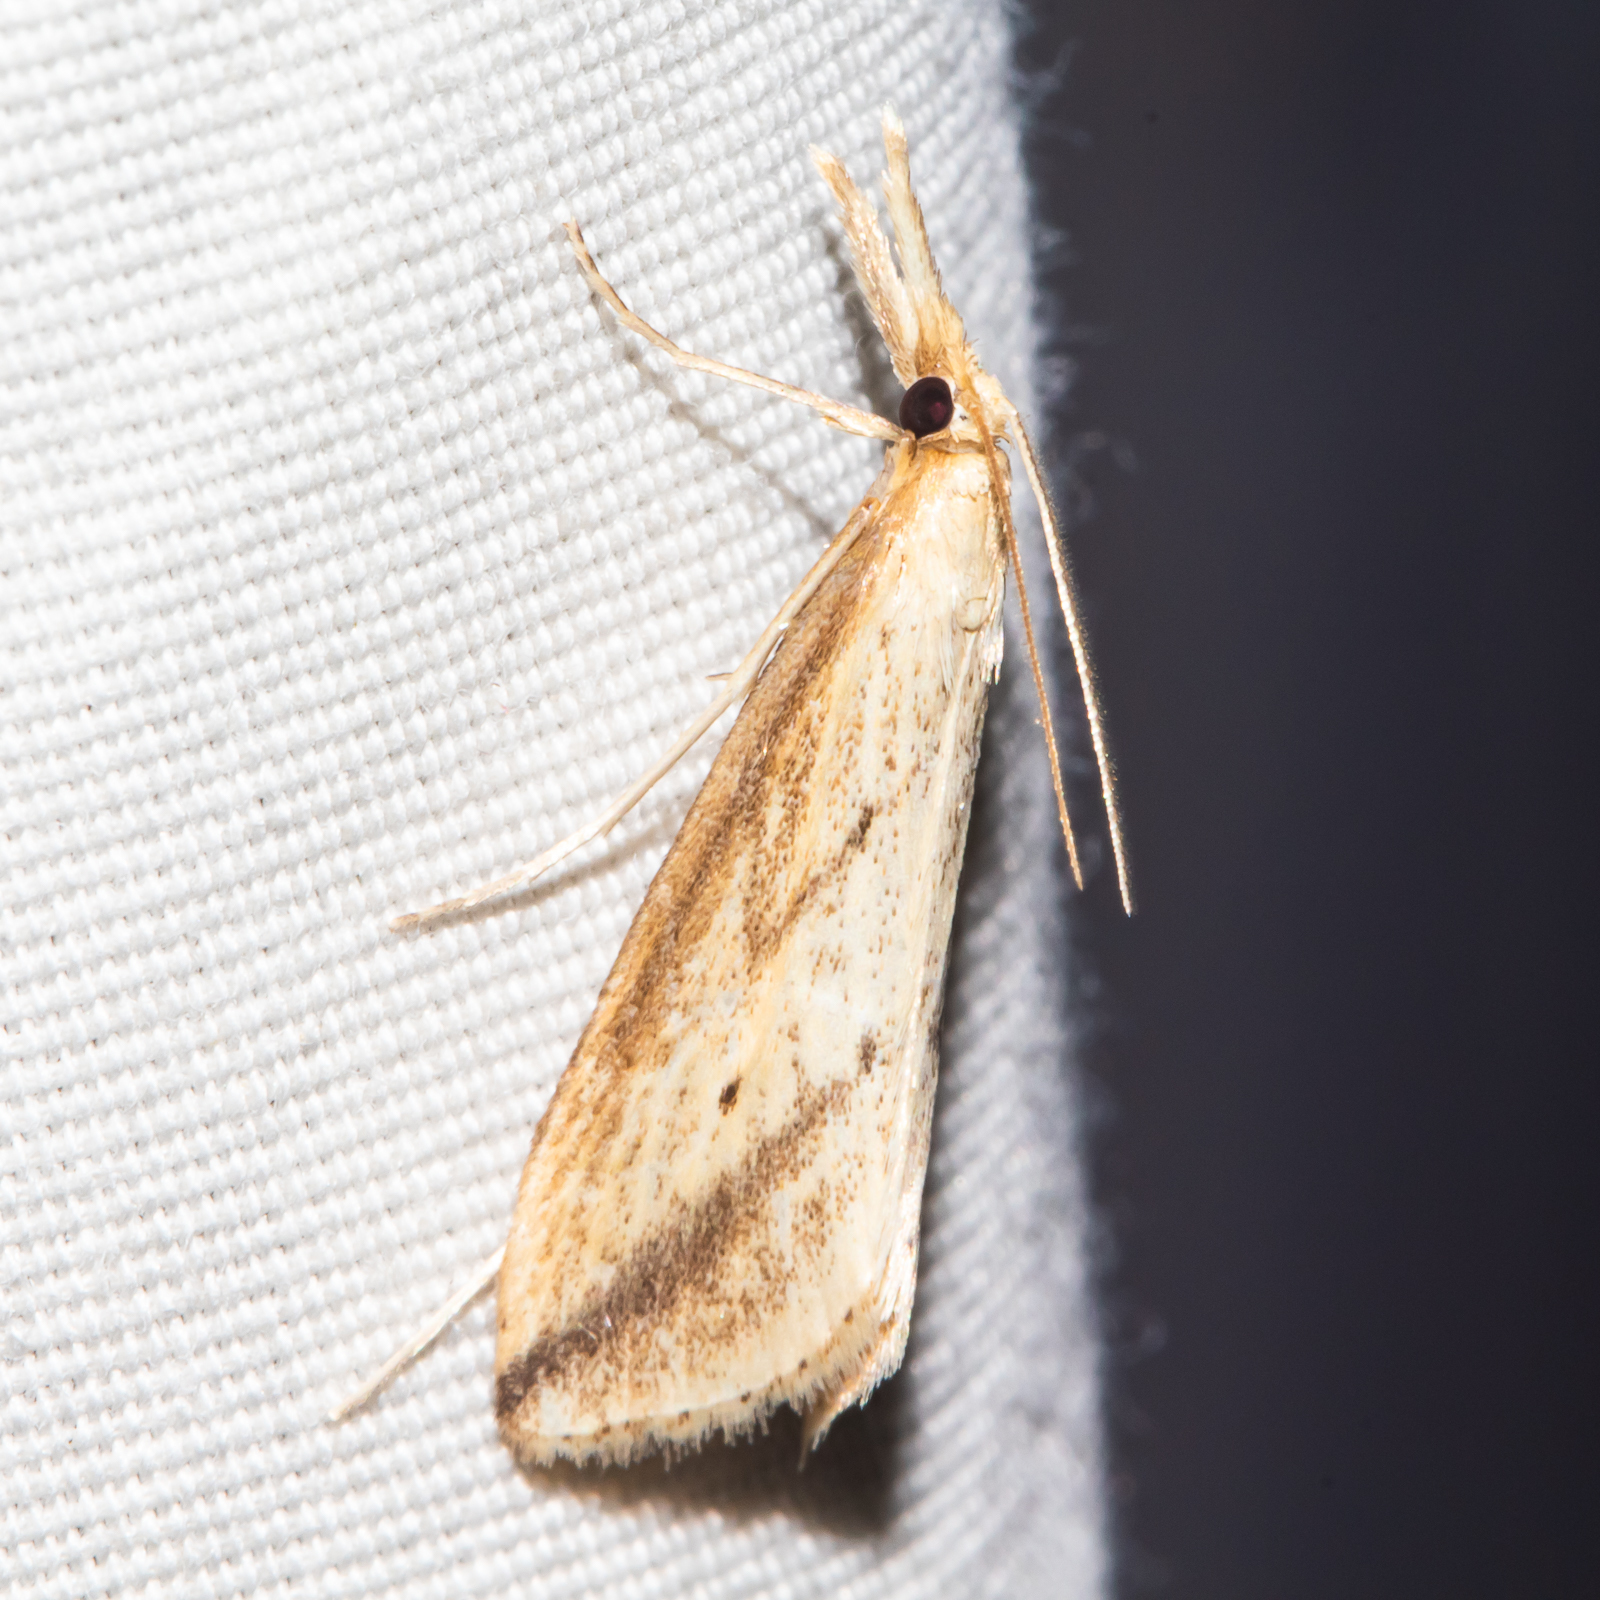 Maryland Biodiversity Project - Long-beaked Donacaula Moth (Donacaula ...